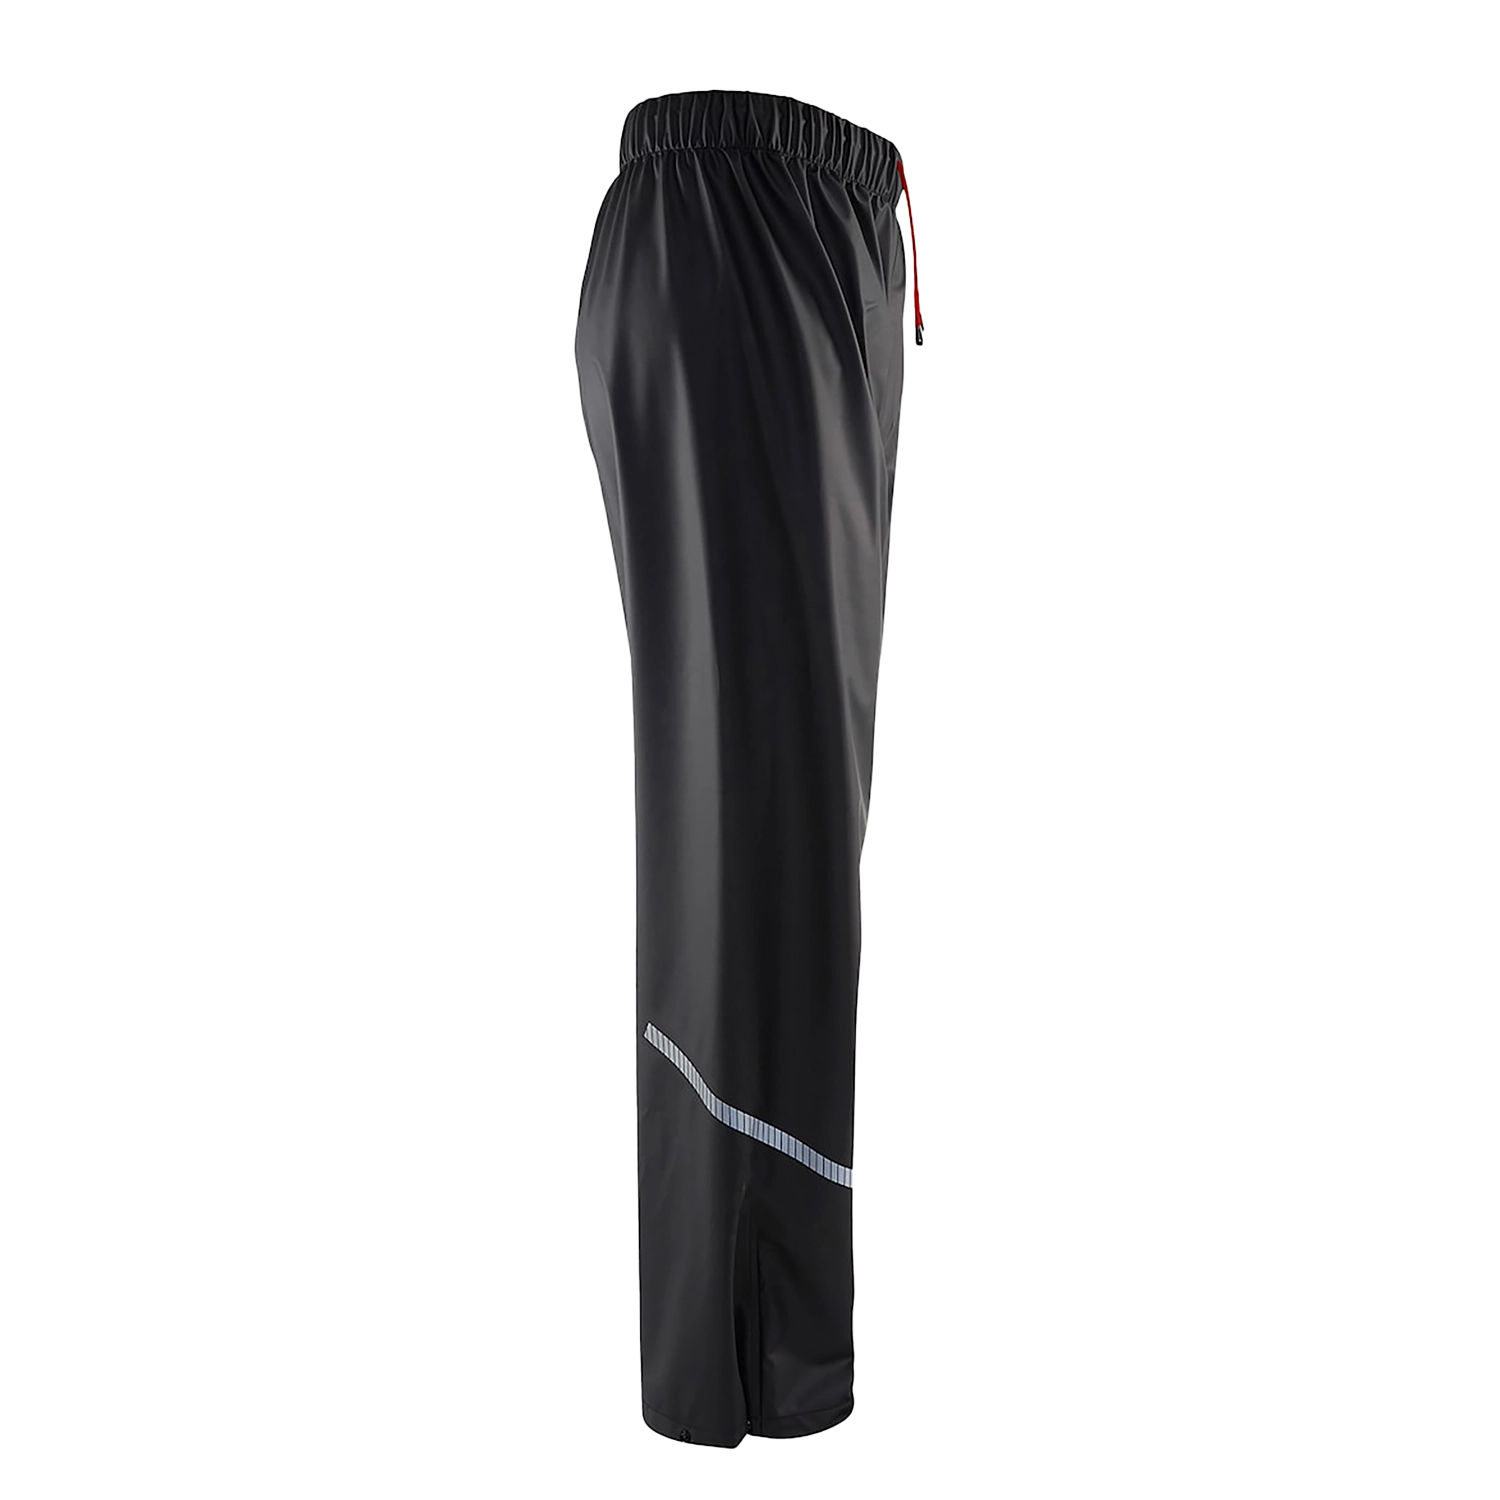 Pantalon de pluie niveau 1 1301/2000/9900 - noir - xl